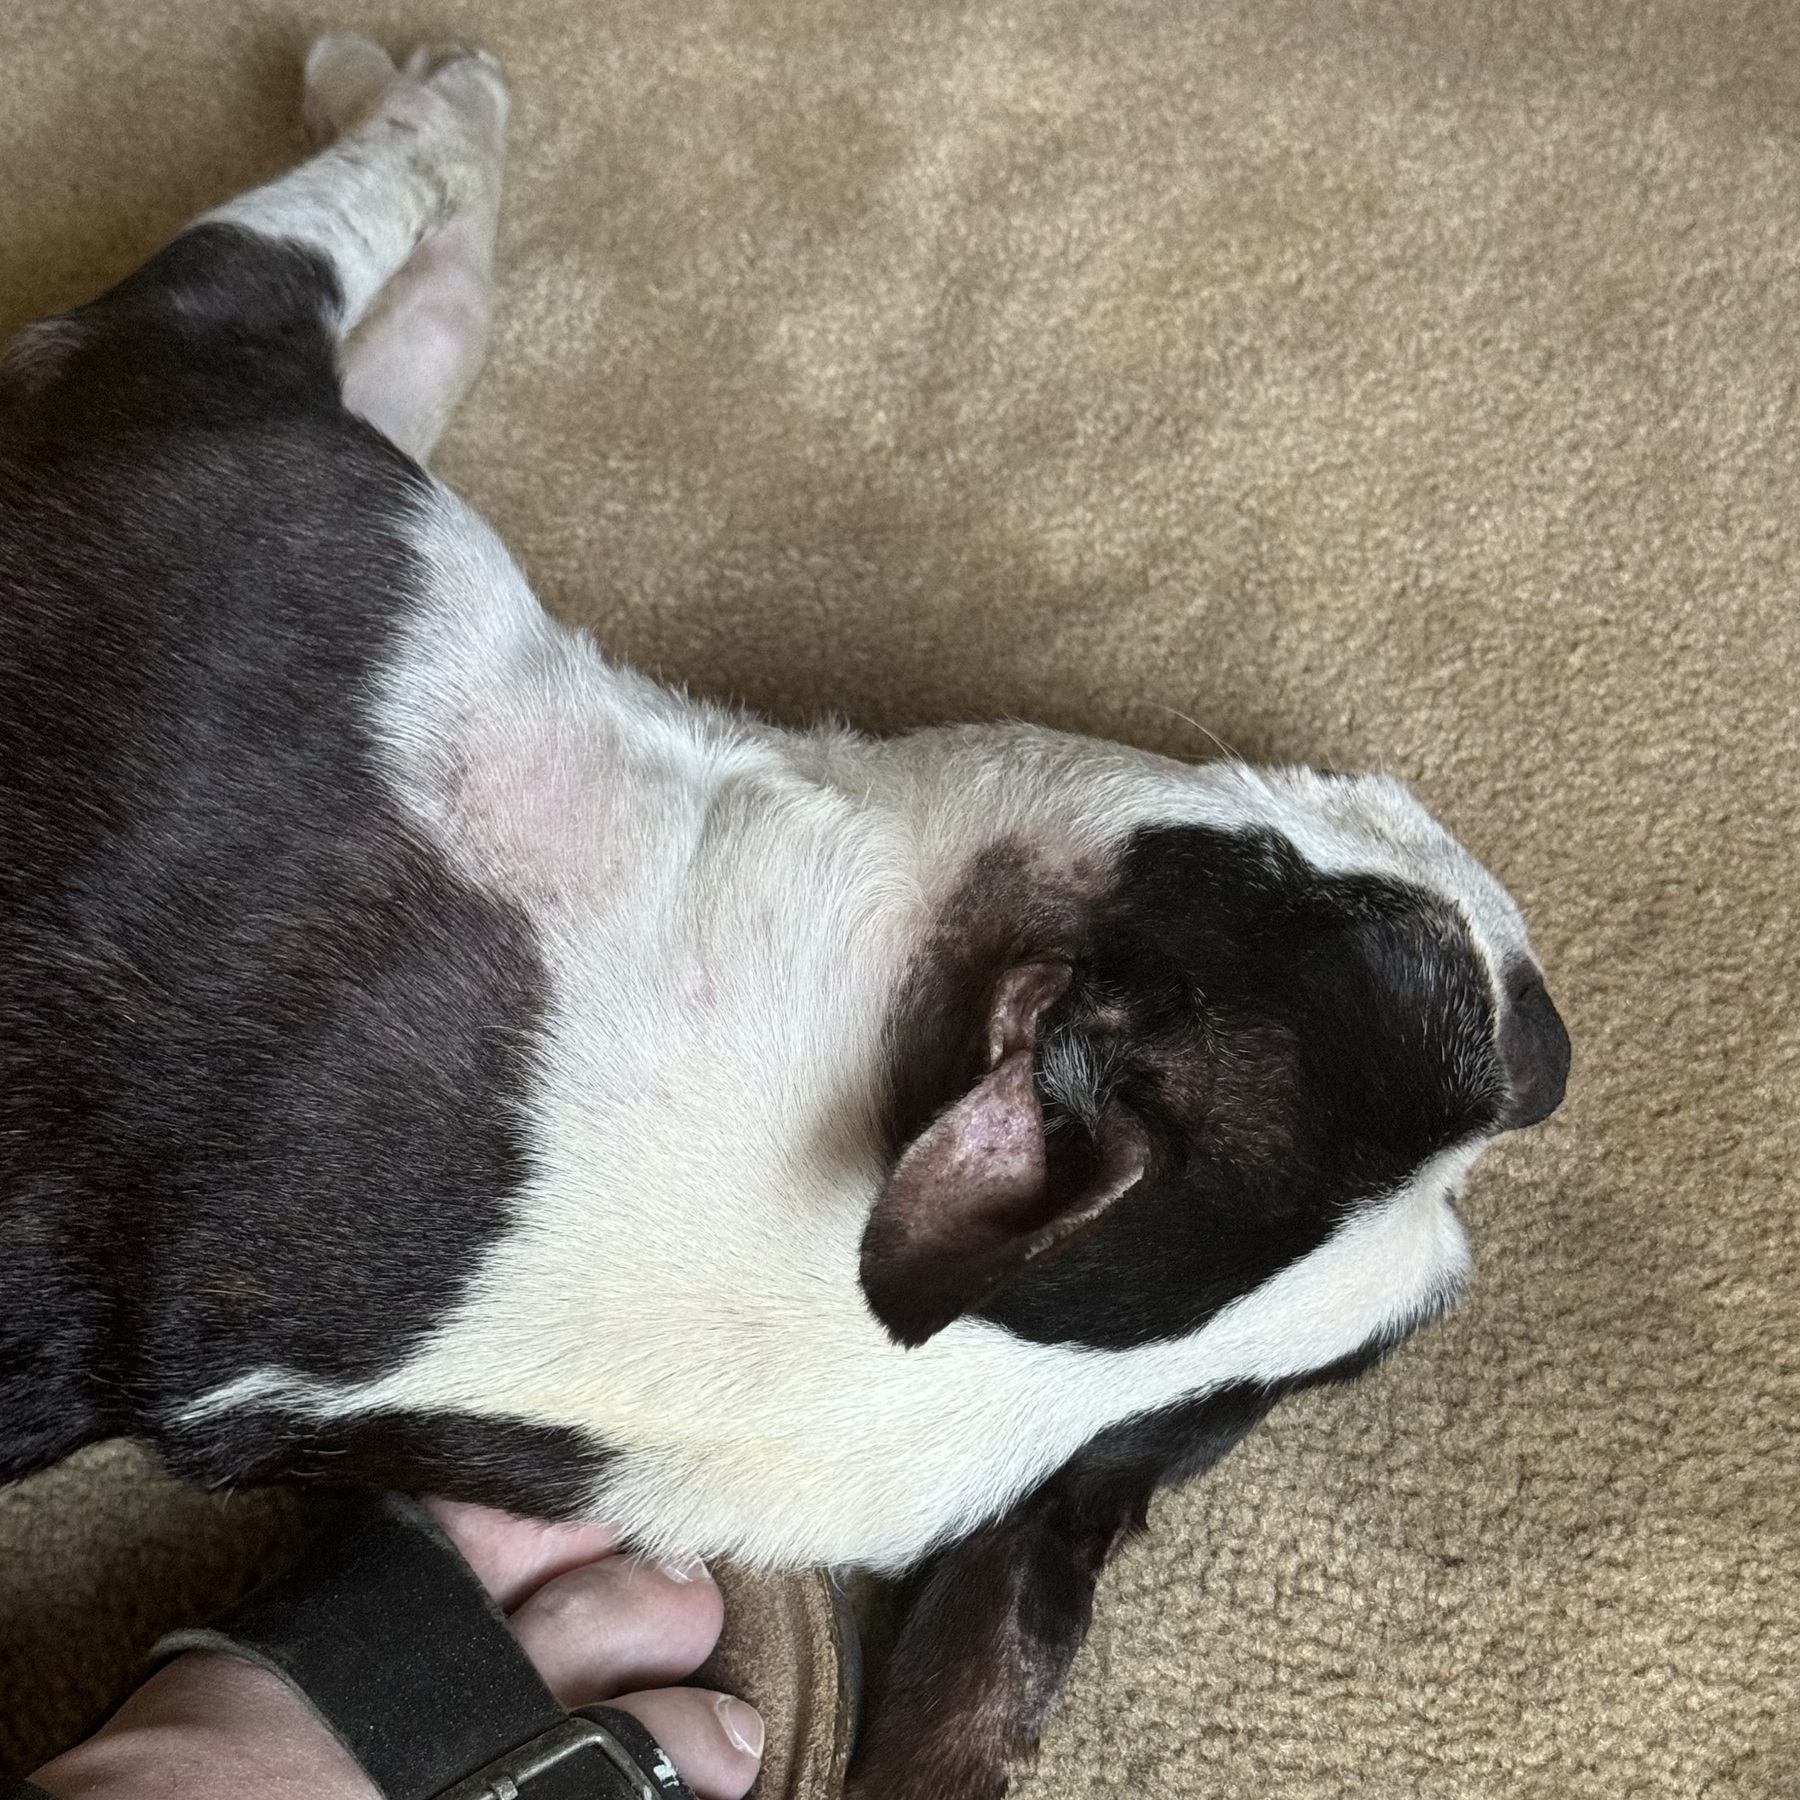 A Boston terrier is sleeping on the floor, pressed against my sandaled foot.